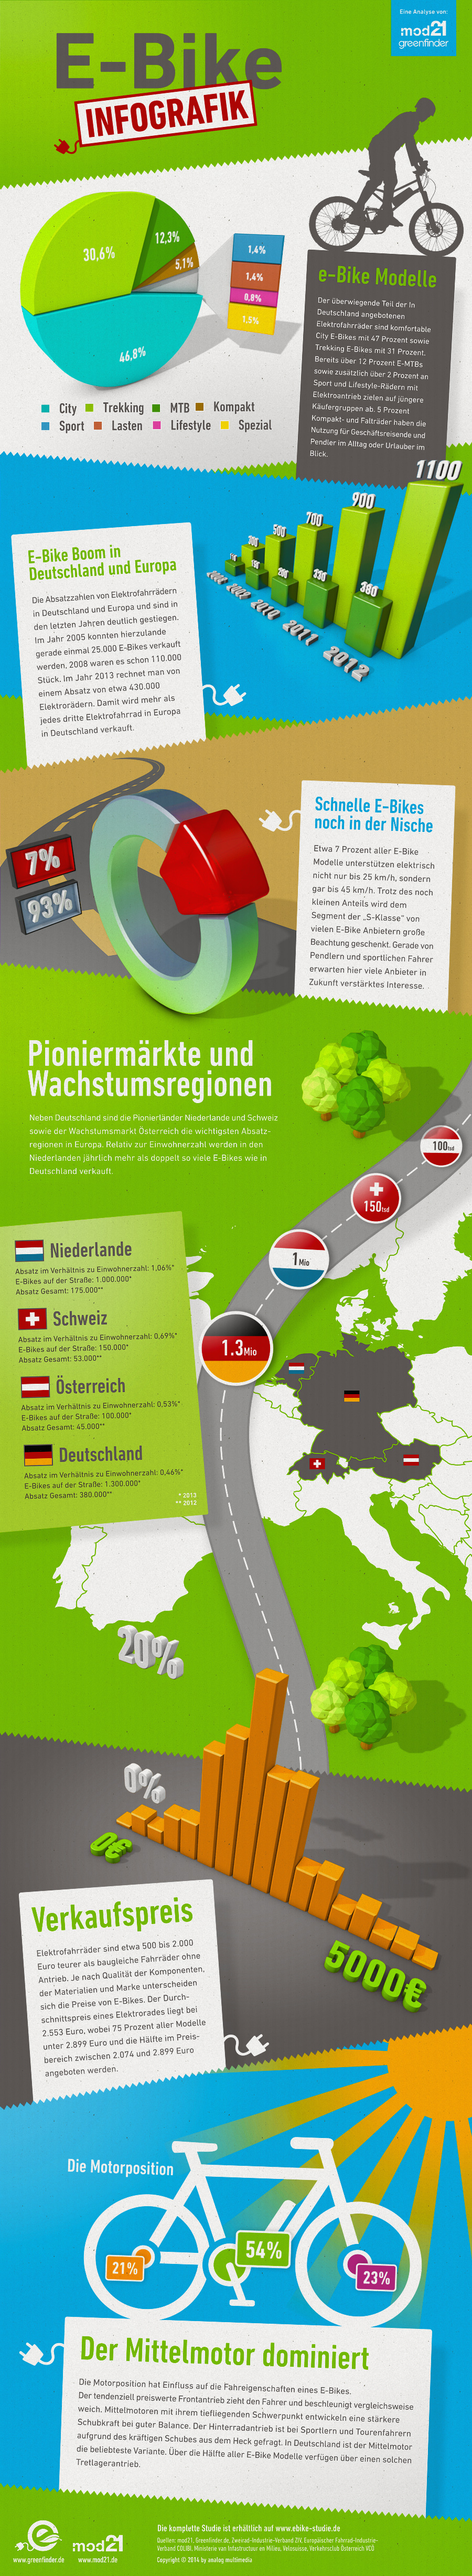 Infografik zur großen E-Bike Studie 2014 von mod21 & Greenfinder.de